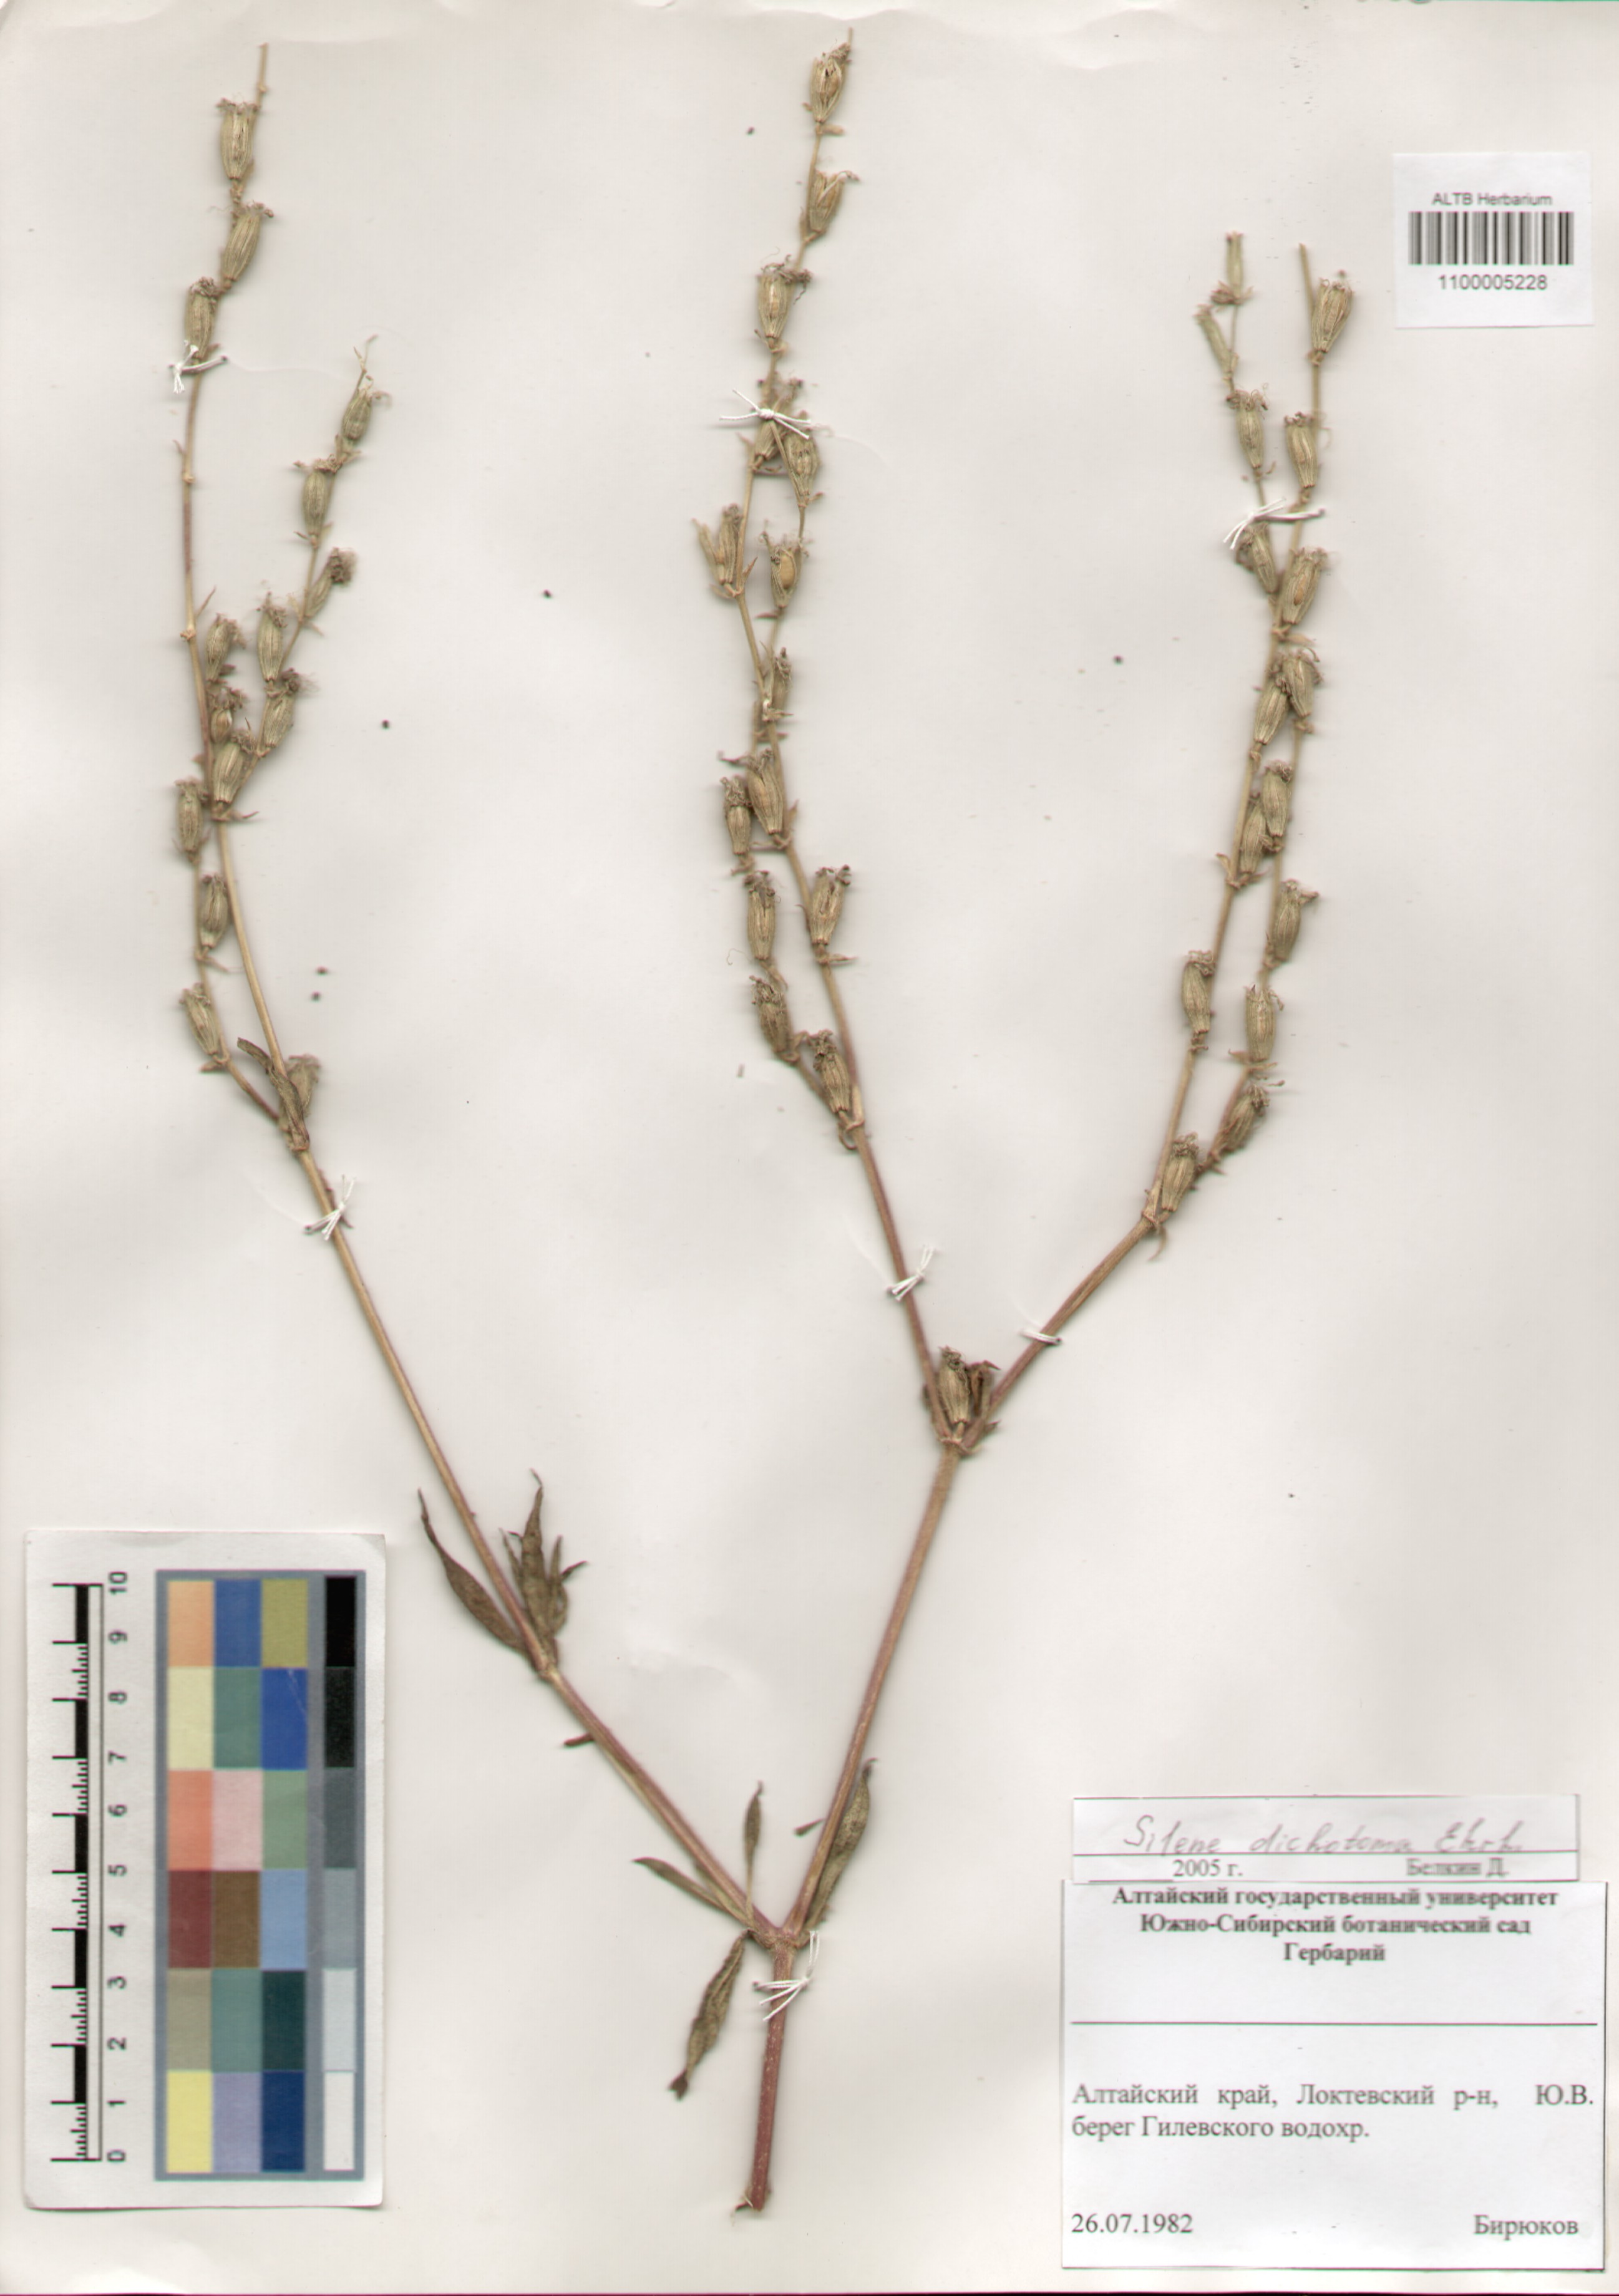 Caryophyllaceae,Silene dichotoma Ehrh.